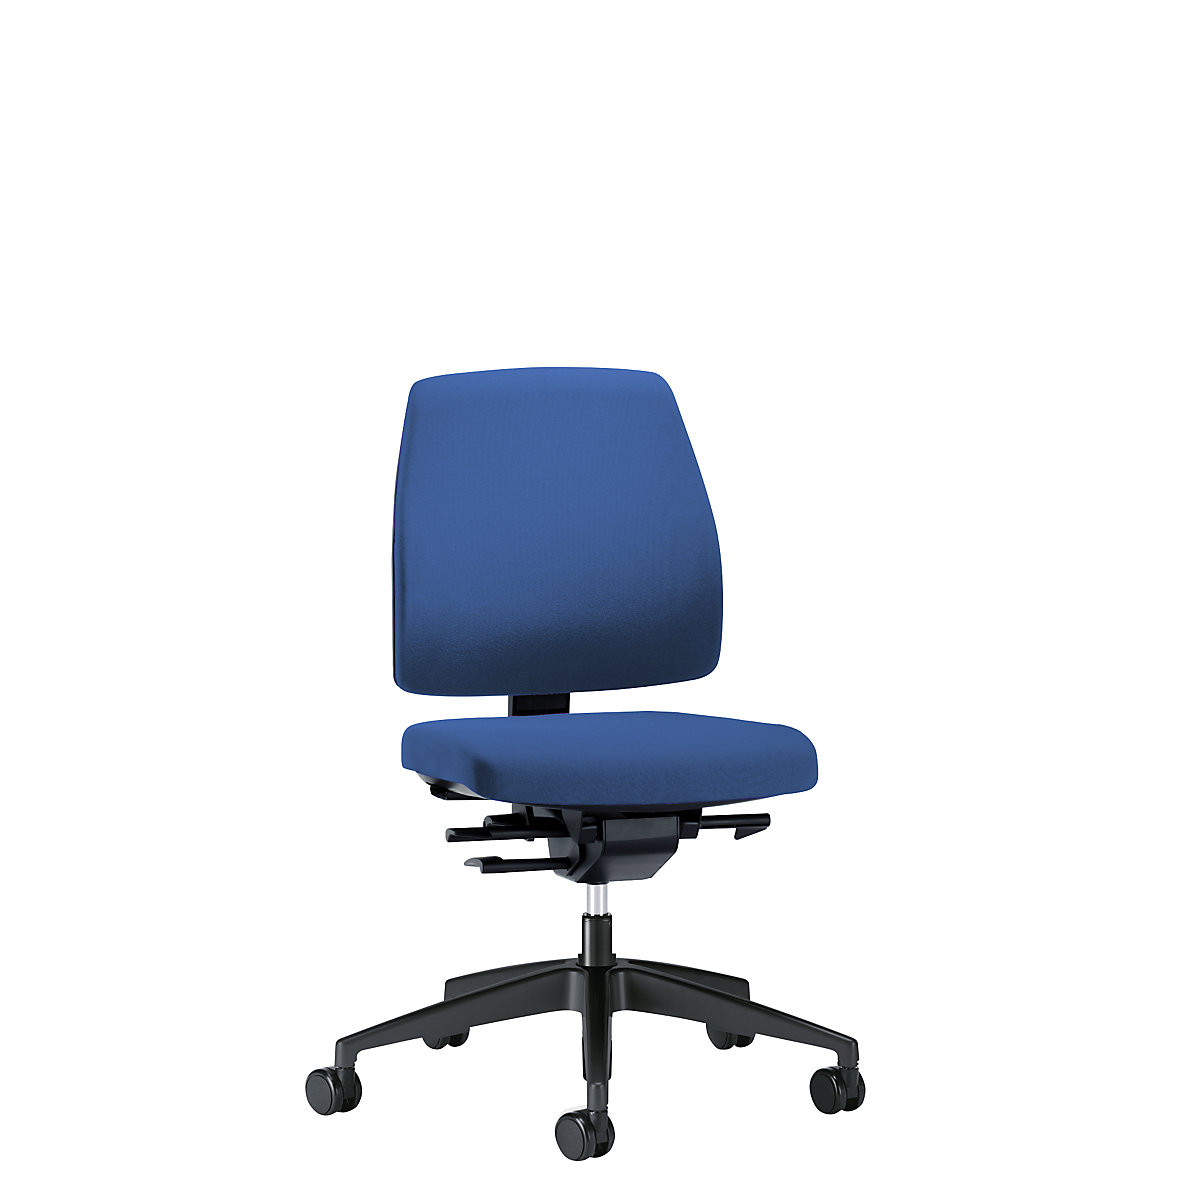 Bürodrehstuhl GOAL, Rückenlehnenhöhe 430 mm interstuhl, Gestell schwarz, mit harten Rollen, enzianblau, Sitztiefe 410 mm